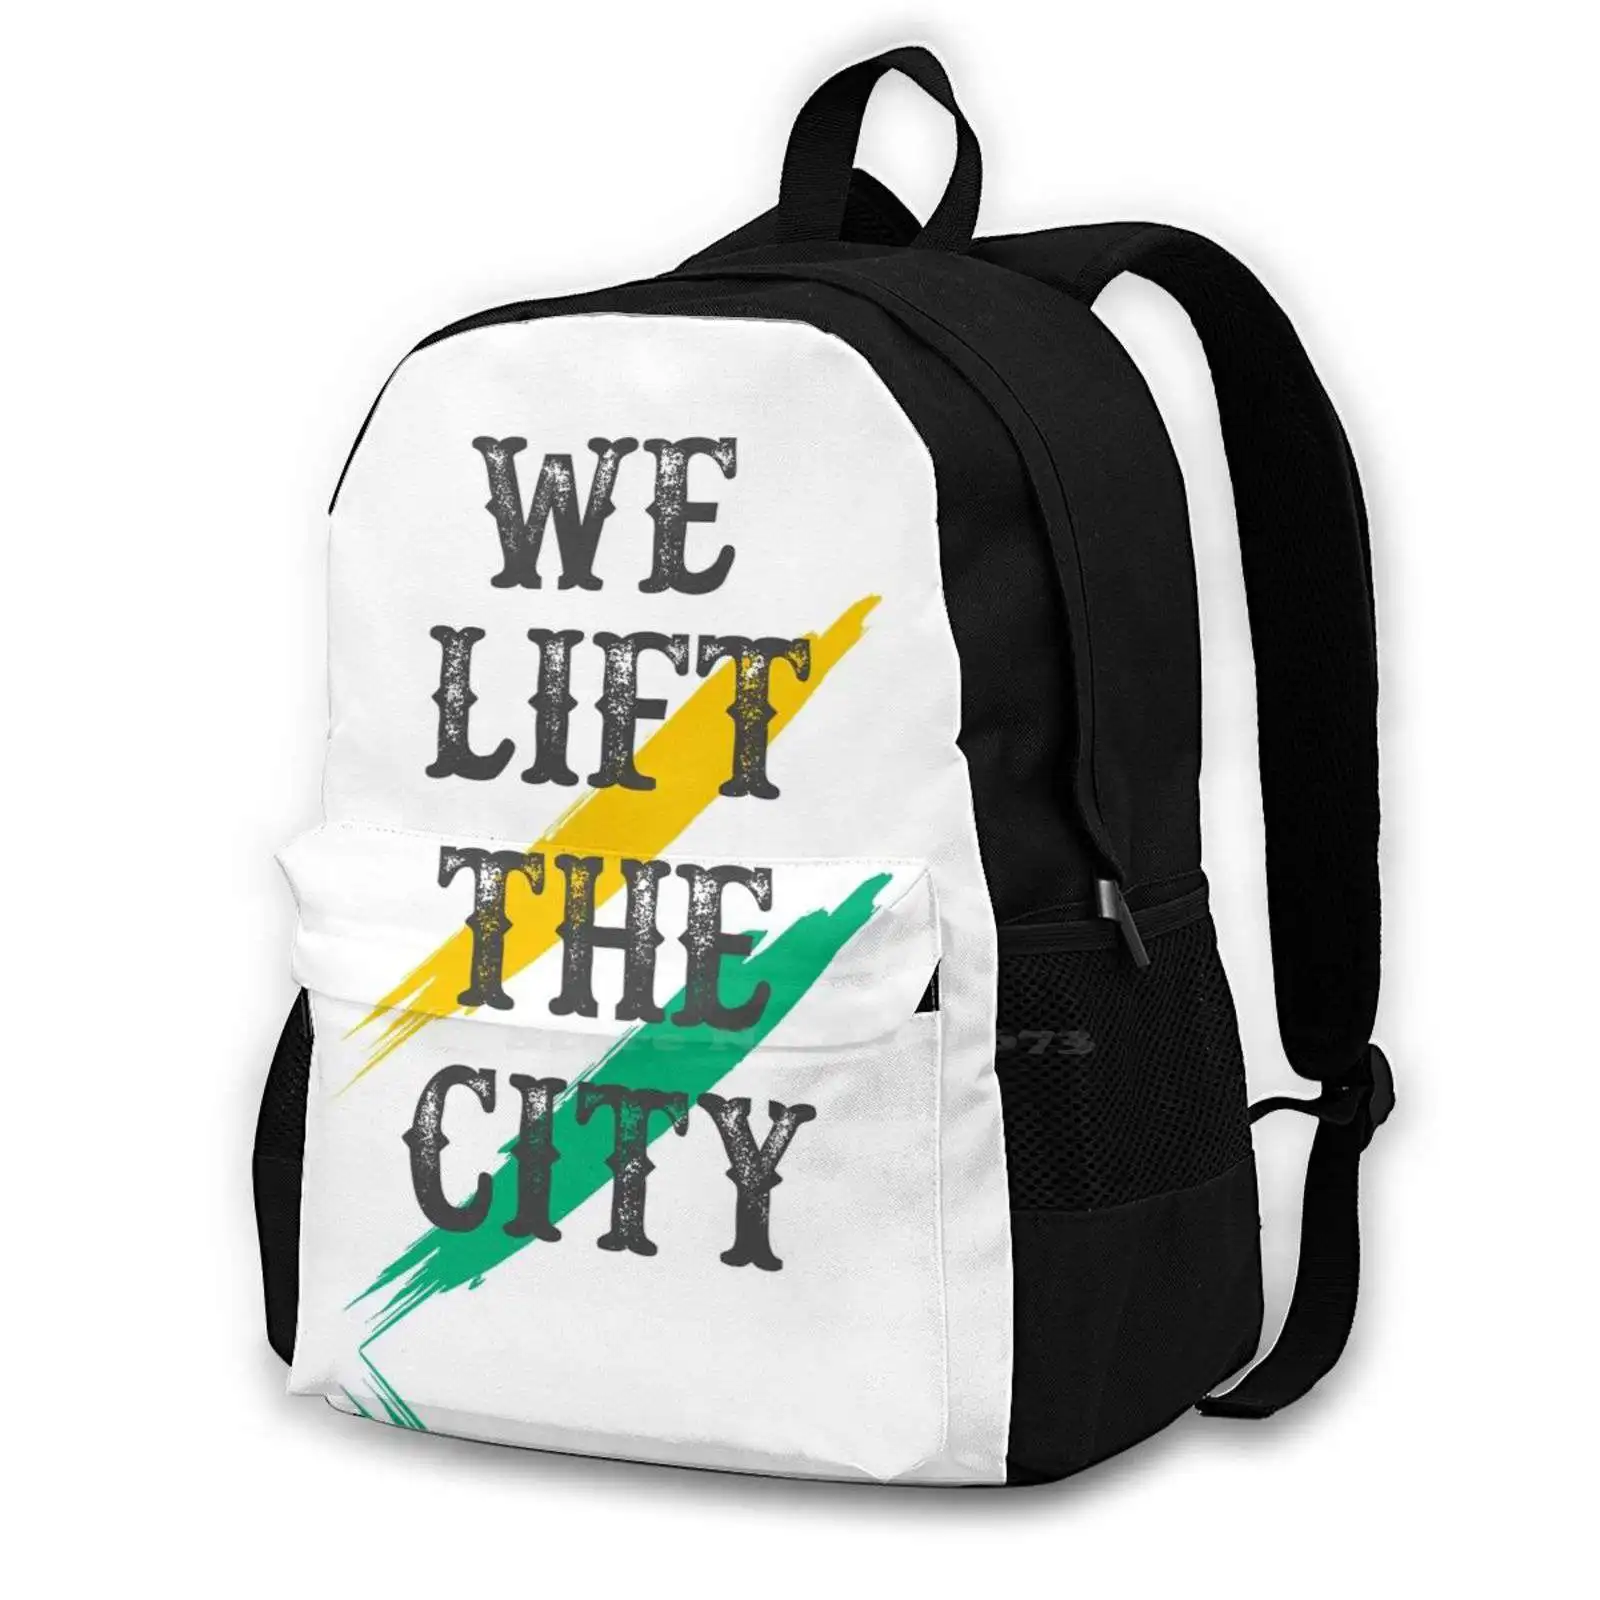 

Футболка We Lift The City, модный вместительный рюкзак для ноутбука, сумки для путешествий, город Торонто, бениб, искусственный клуб, фитнес, редкий